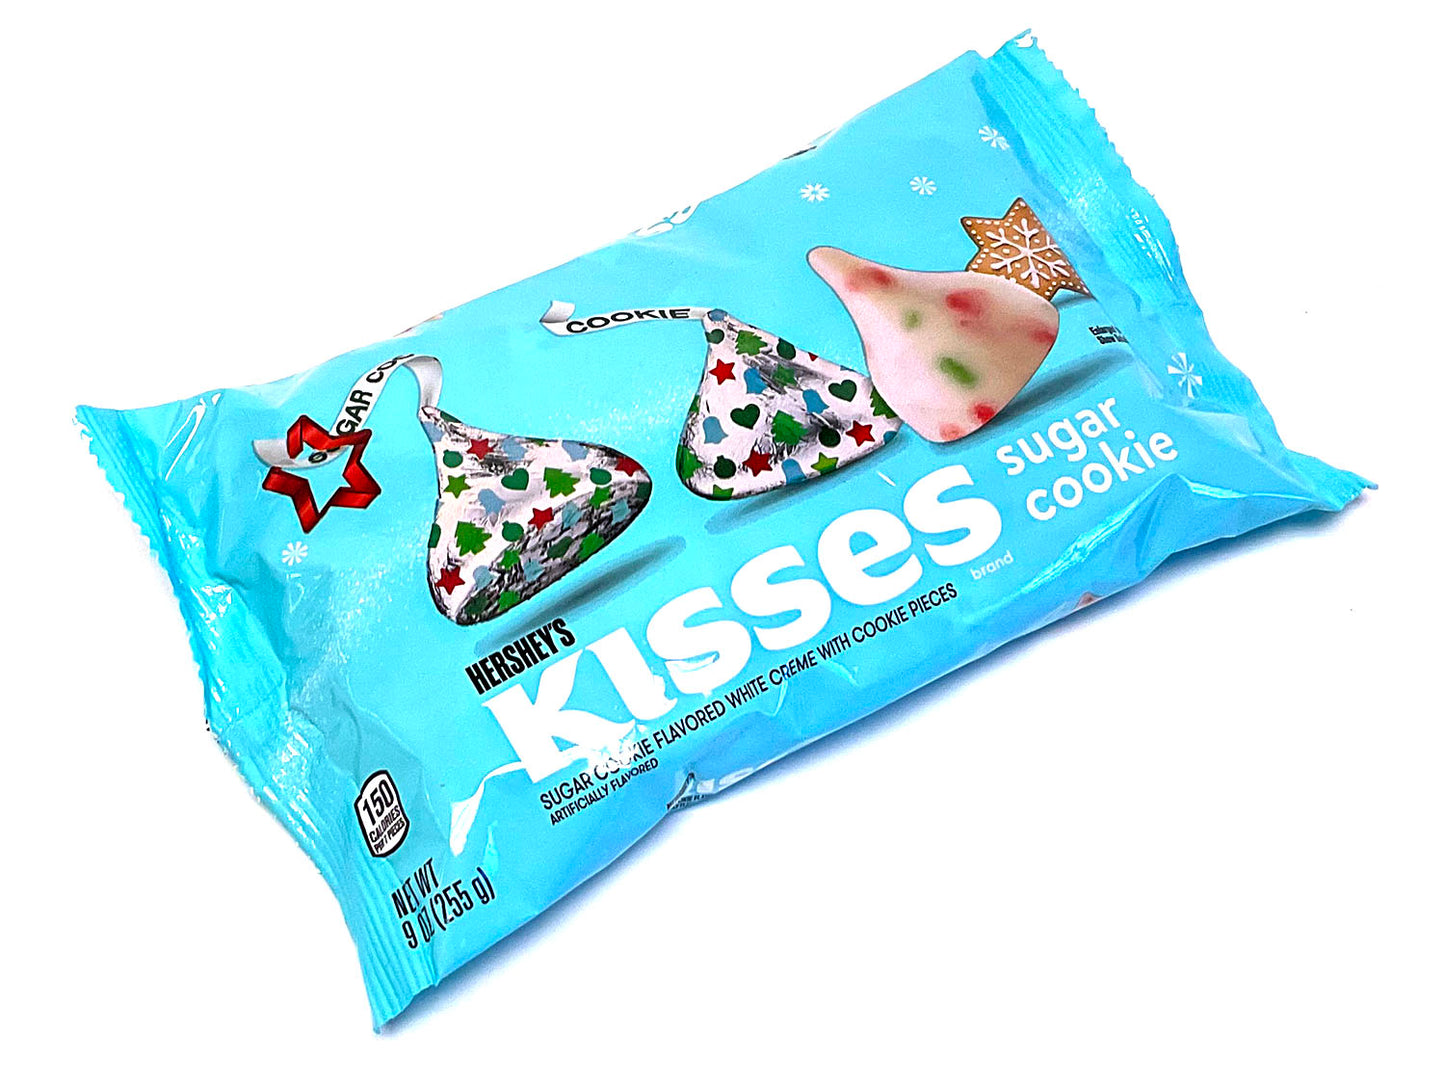 Hershey's Kisses - Sugar Cookie -  9 oz bag